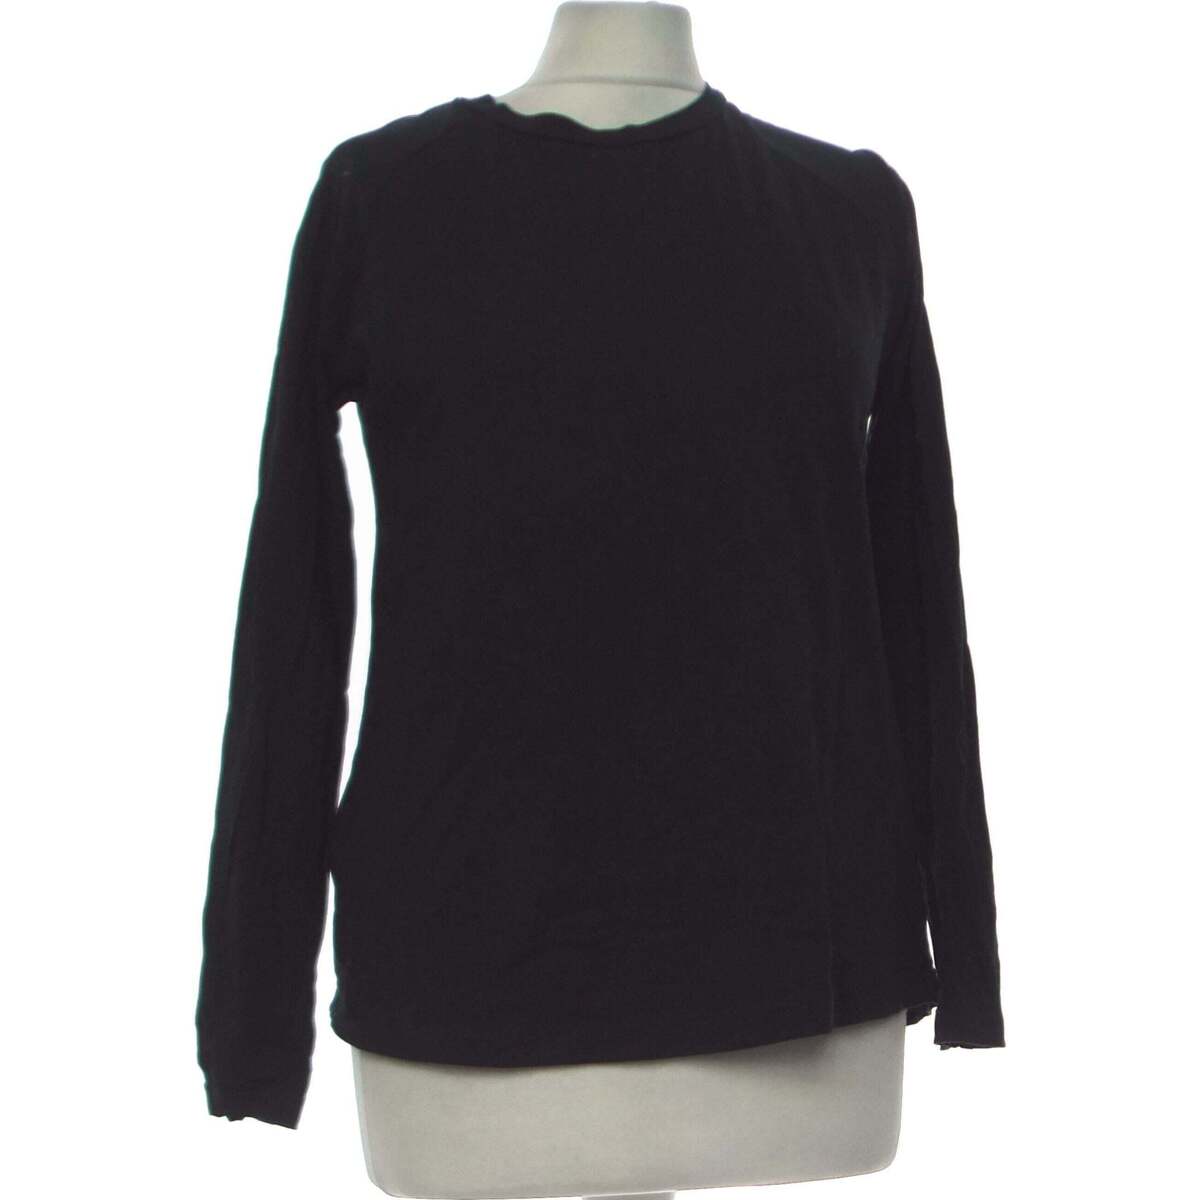 Vêtements Femme Cotton printed T shirt top manches longues  36 - T1 - S Noir Noir